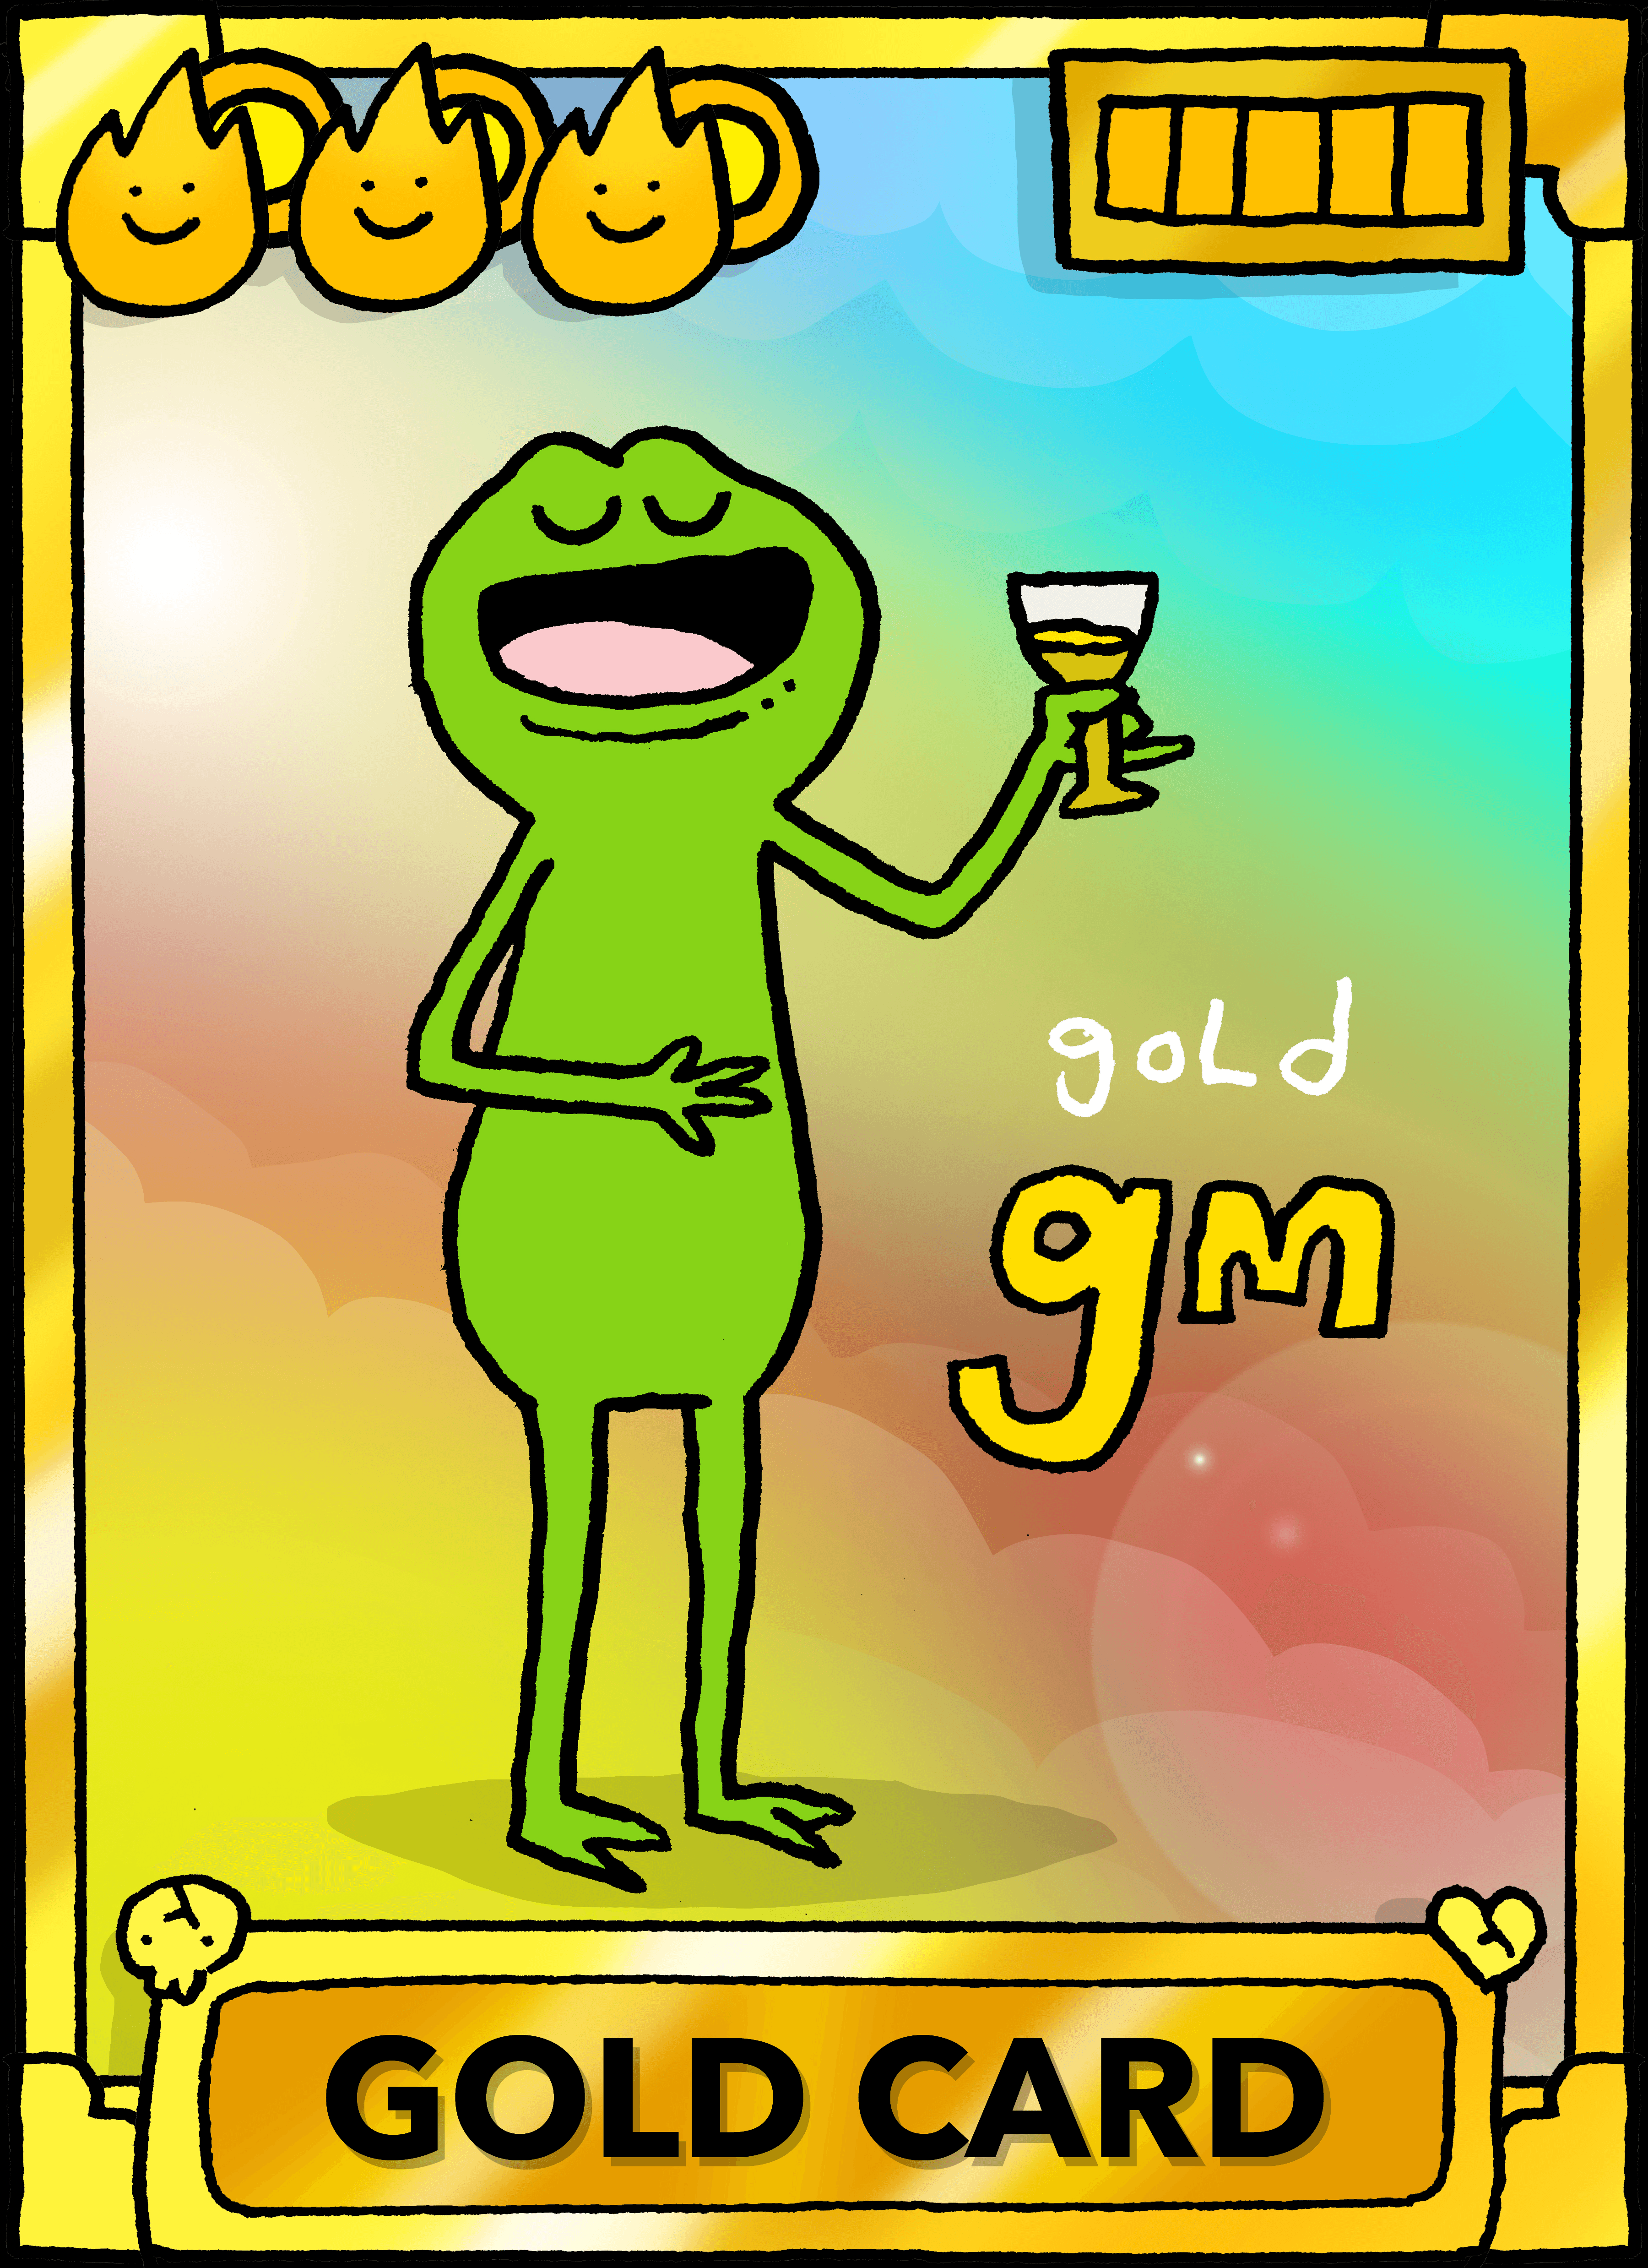 GOLD CARD